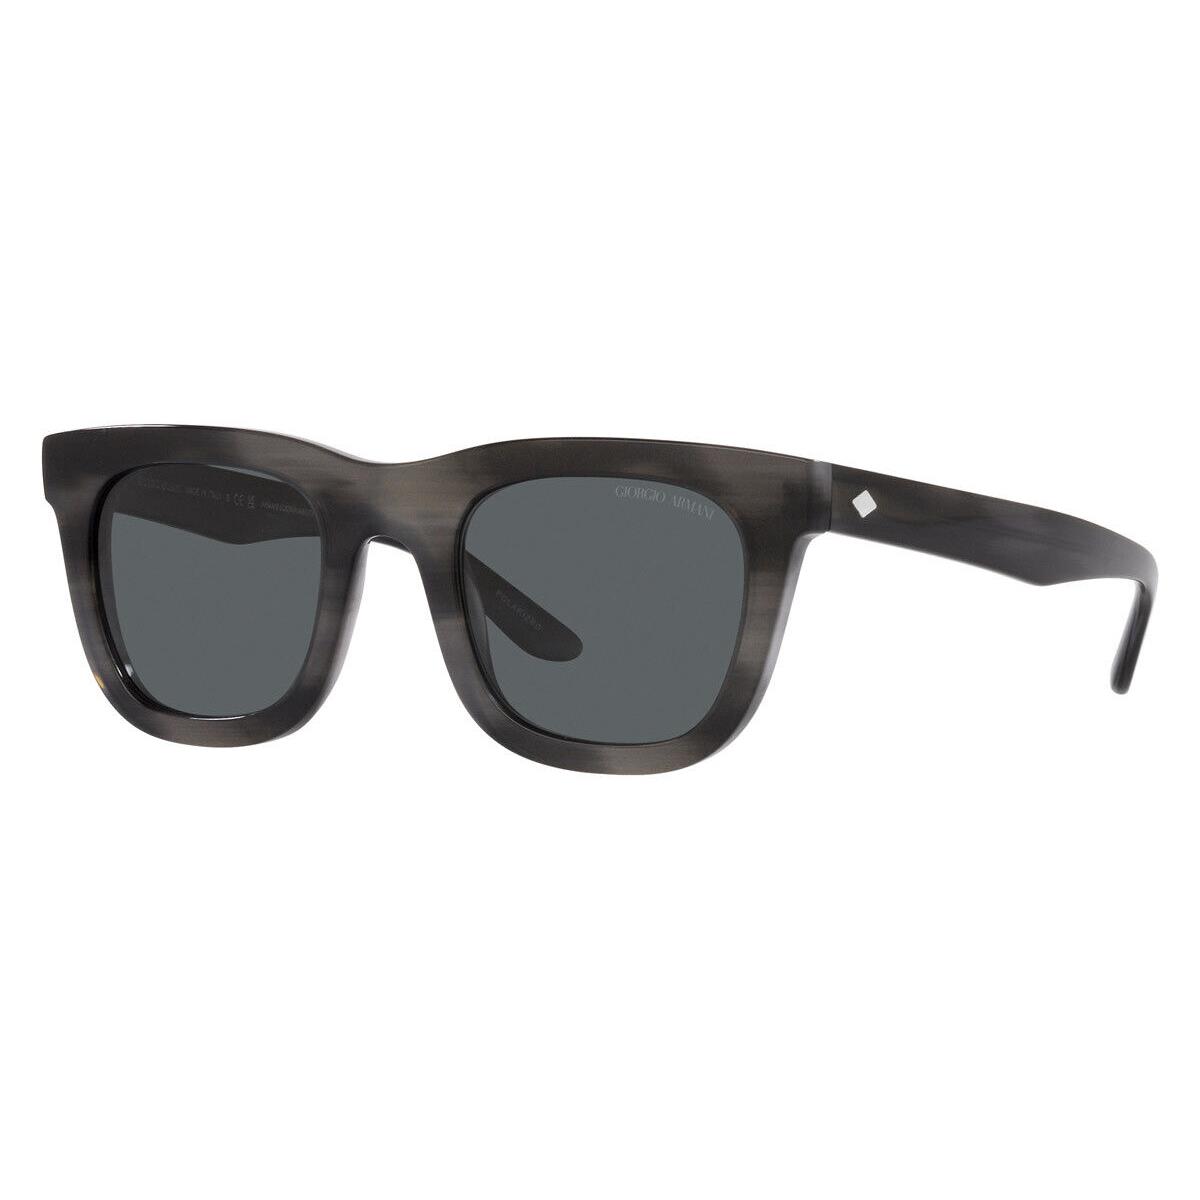 Giorgio Armani AR8171 Sunglasses Striped Gray Polarized Dark Gray 49mm